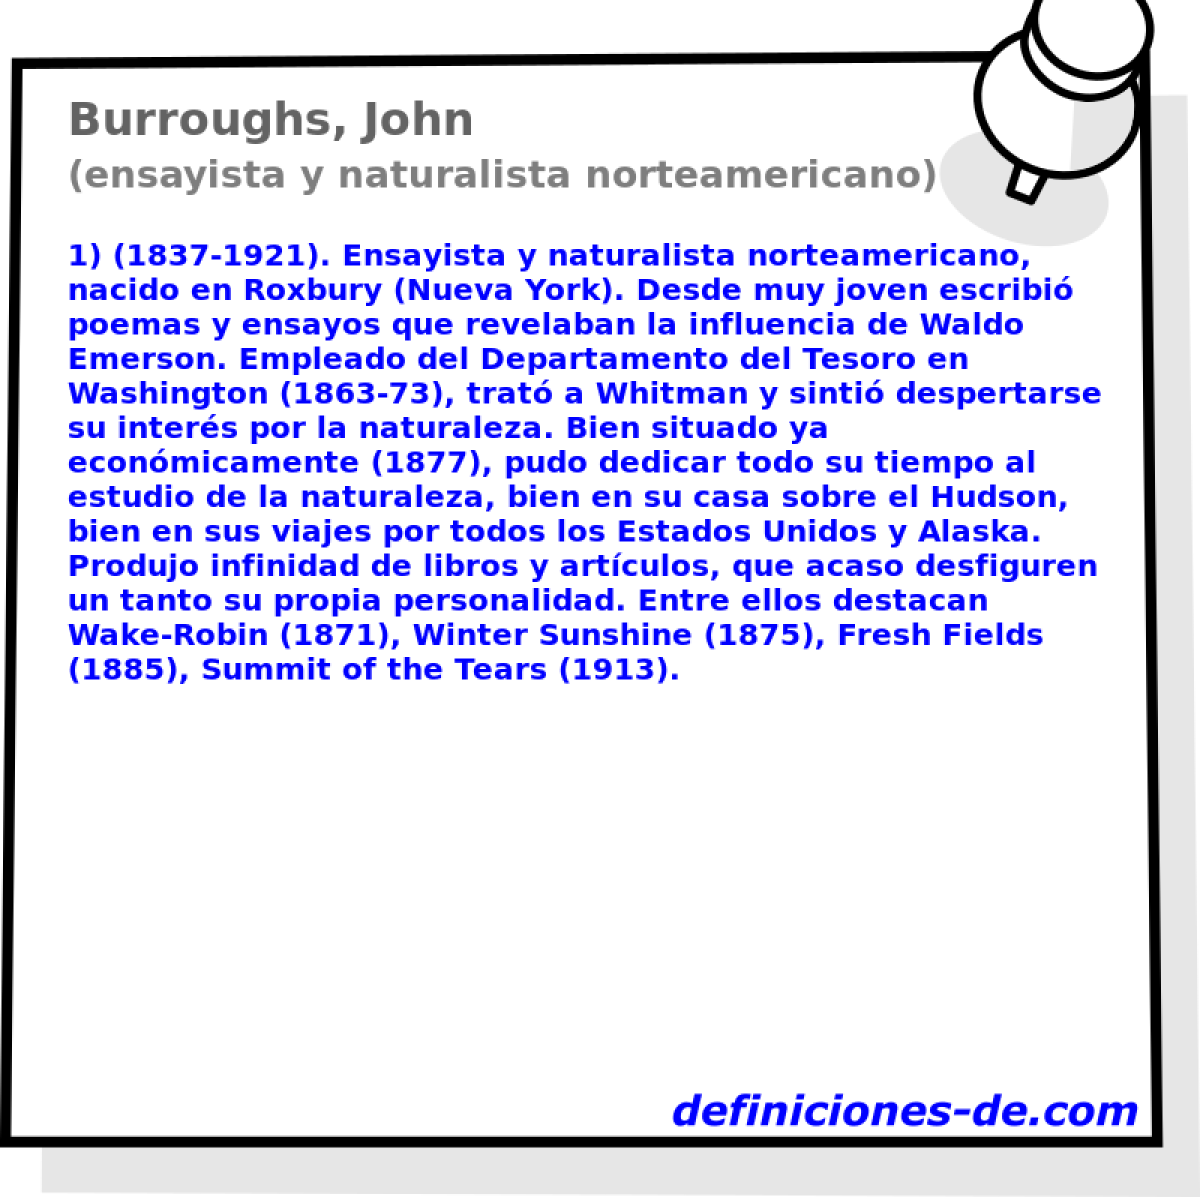 Burroughs, John (ensayista y naturalista norteamericano)